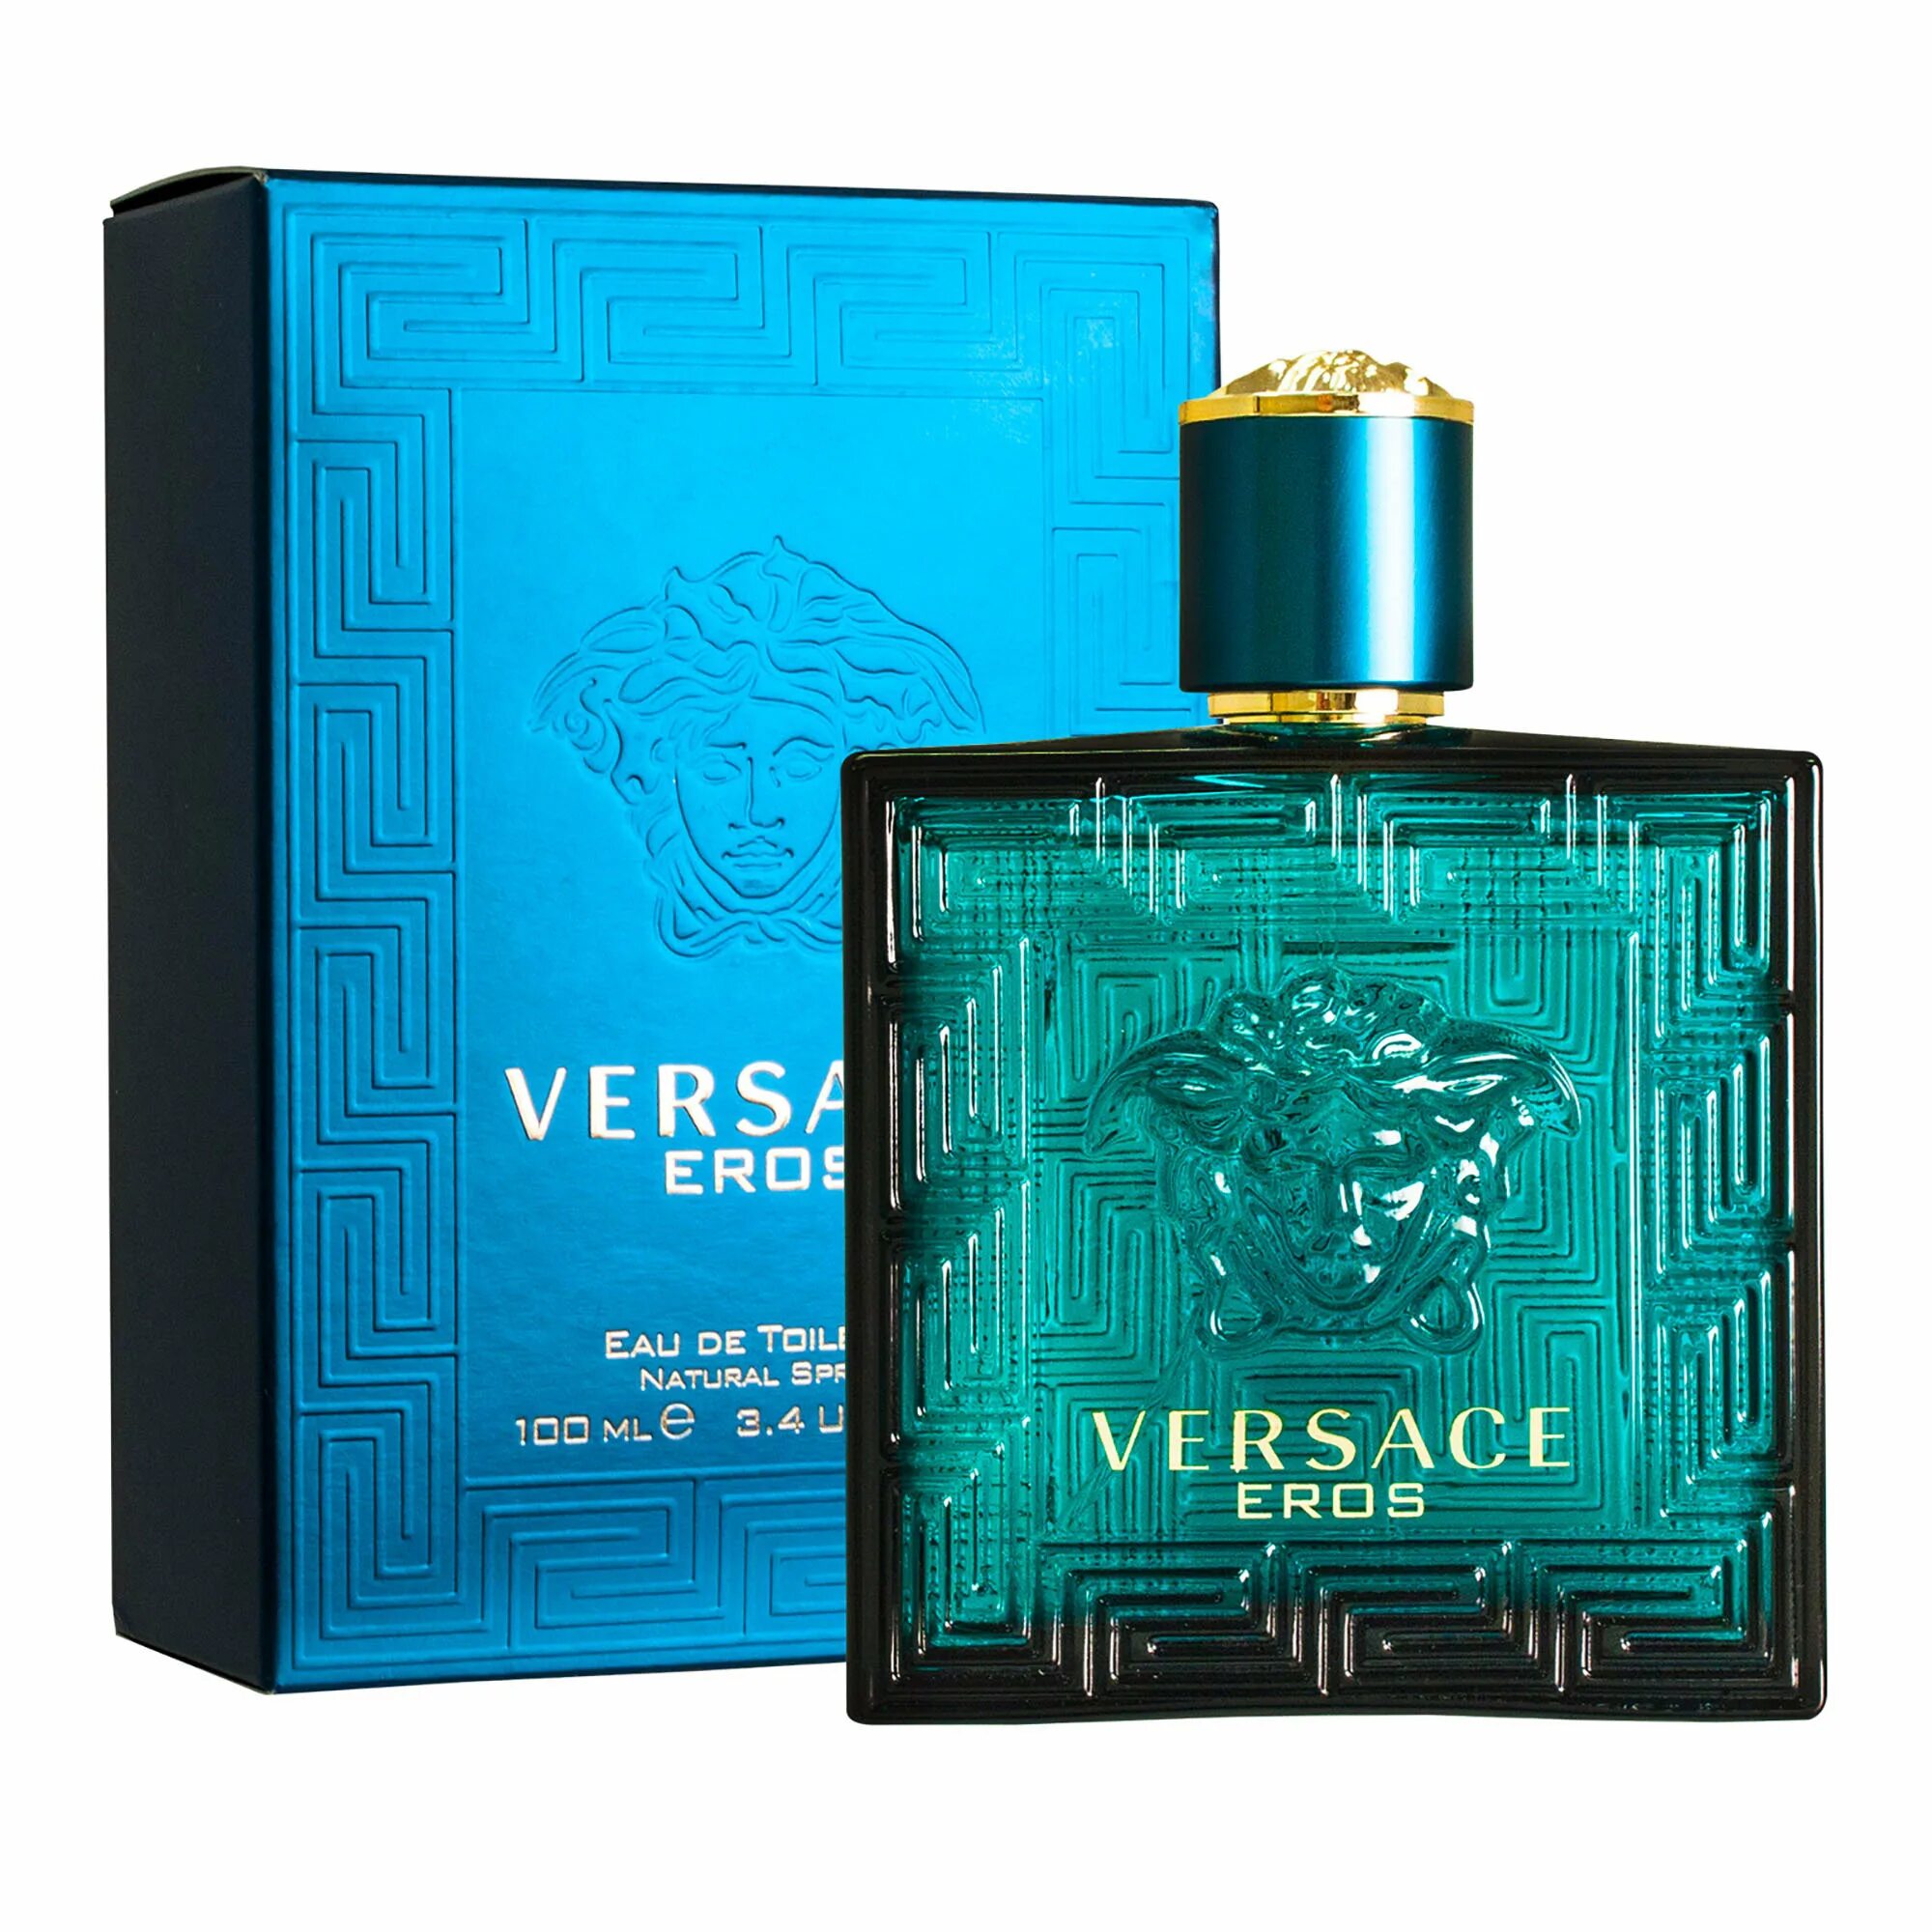 Versace Eros мужской 100 мл. Духи Versace Eros Parfum 100 мл. Versace Eros туалетная вода 100 мл. Версаче Эрос мужские 30 мл. Eros collection